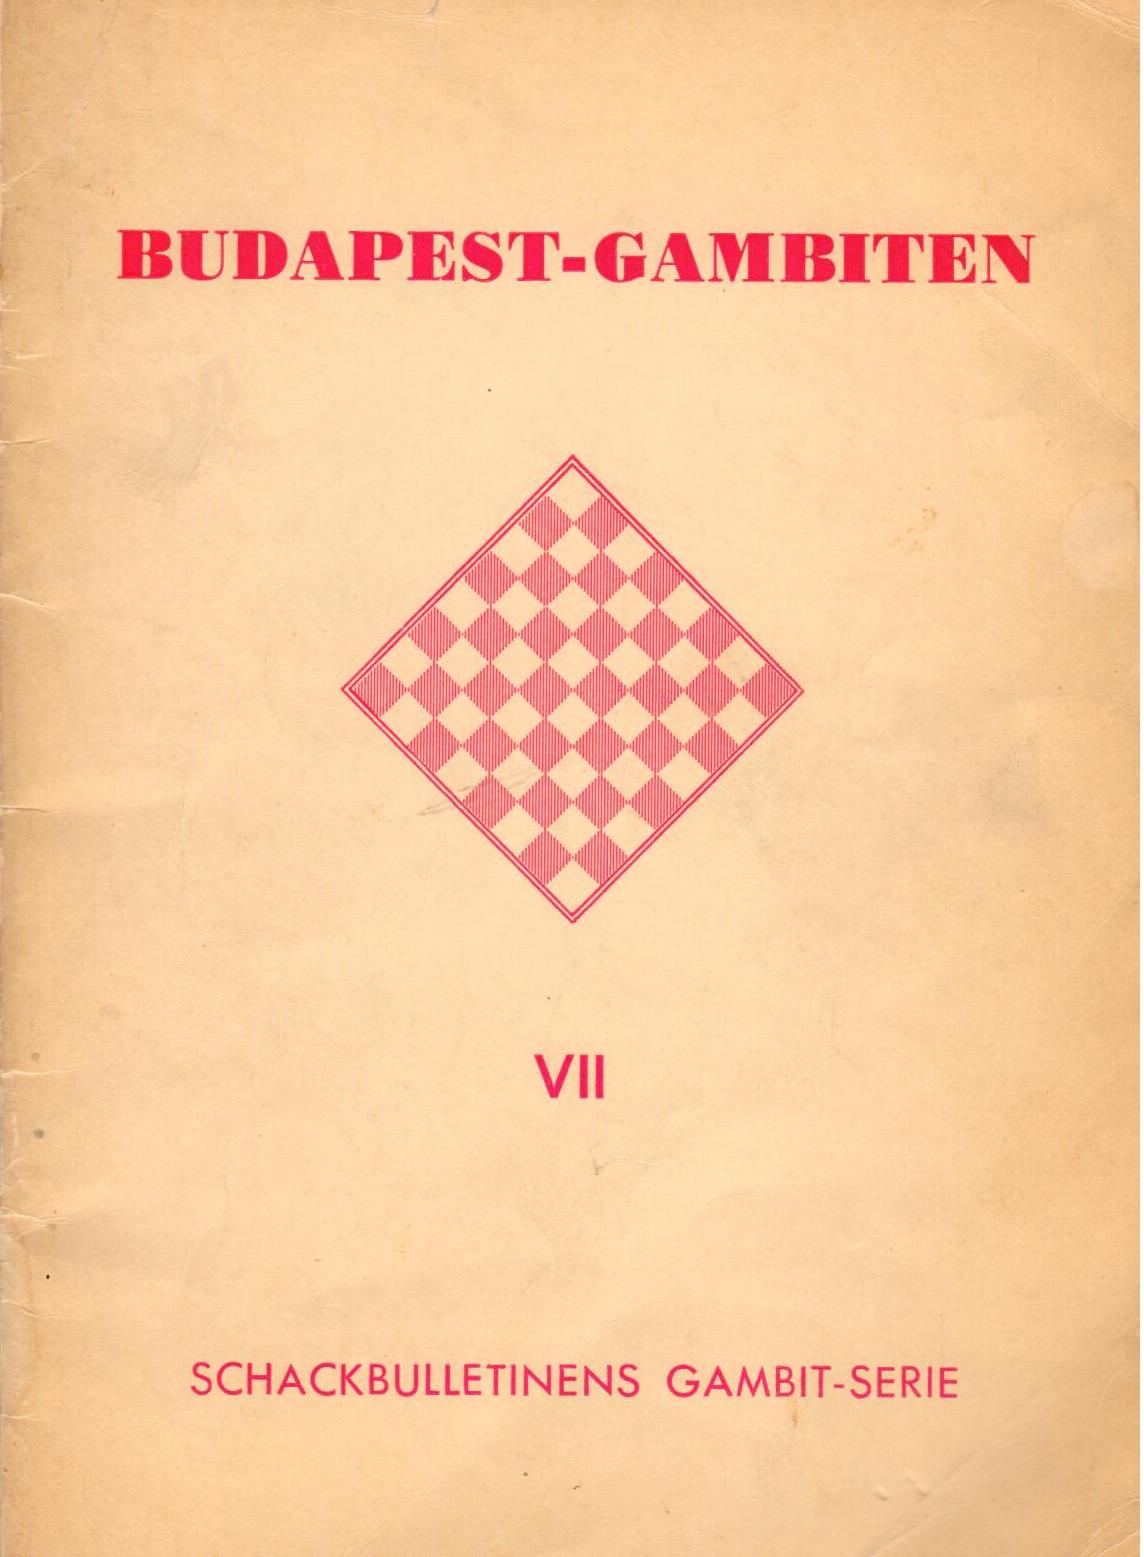 HILDEBRAND / BUDAPEST-GAMBITEN, 2.ed, paper